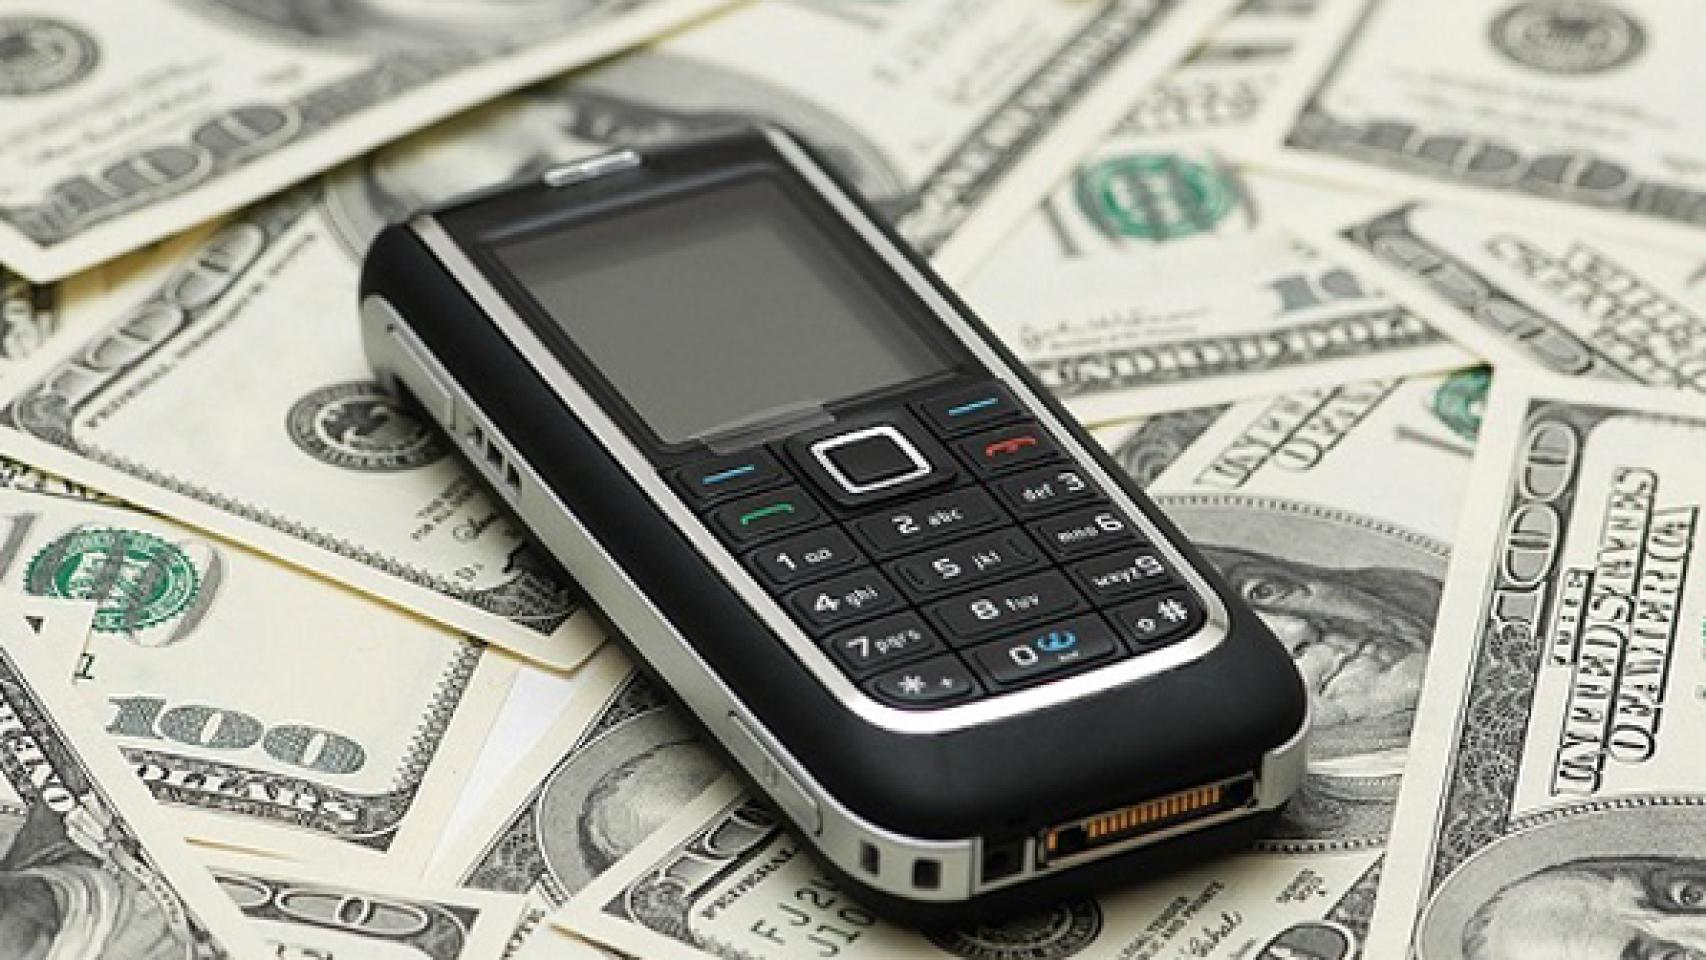 ¿Realmente sale más caro comprar un móvil hoy en día?